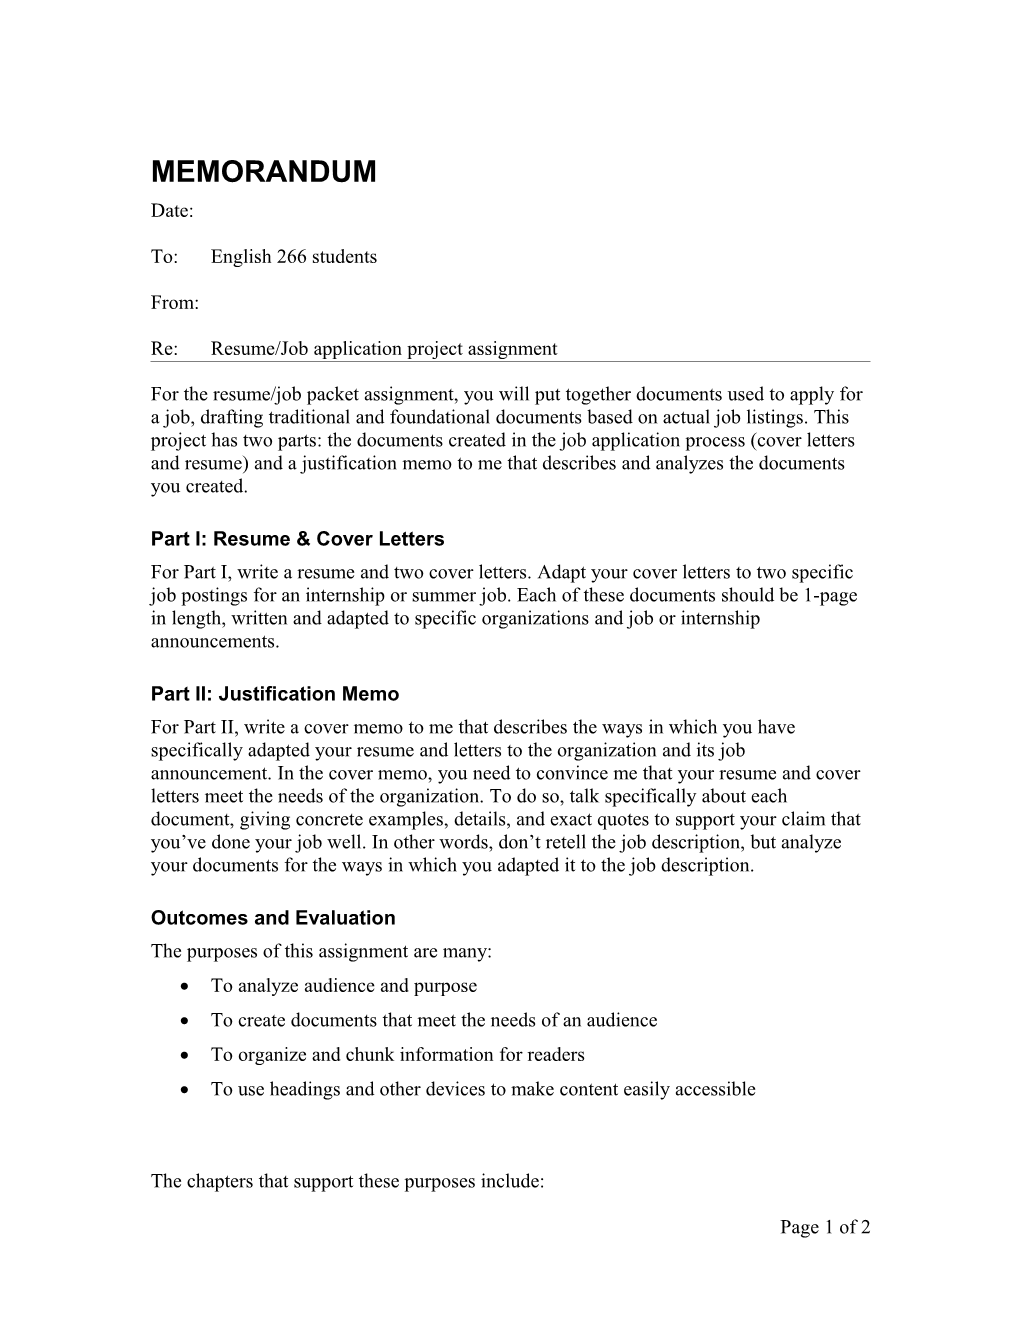 ENL 266 Job Packet Assignment Sheet